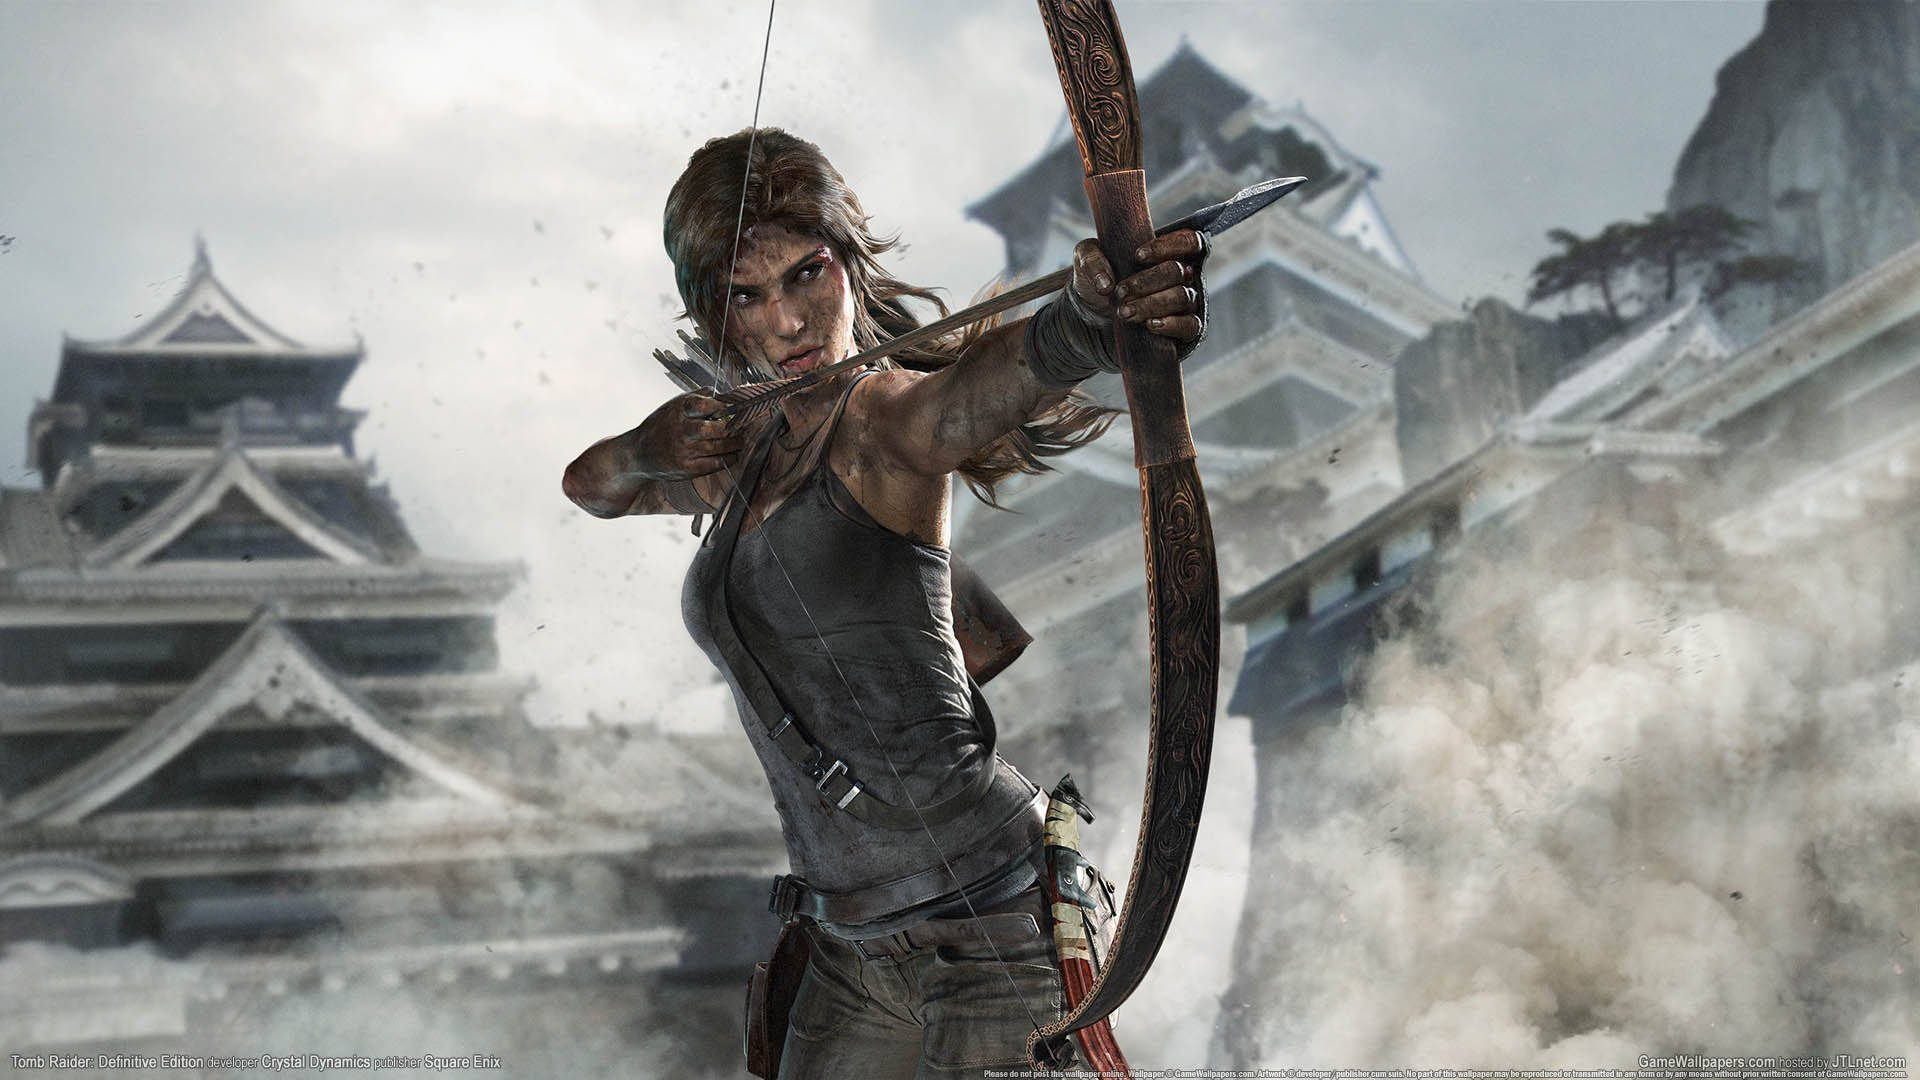 Lara Croft i aktion i Tomb Raider-spillet. Wallpaper